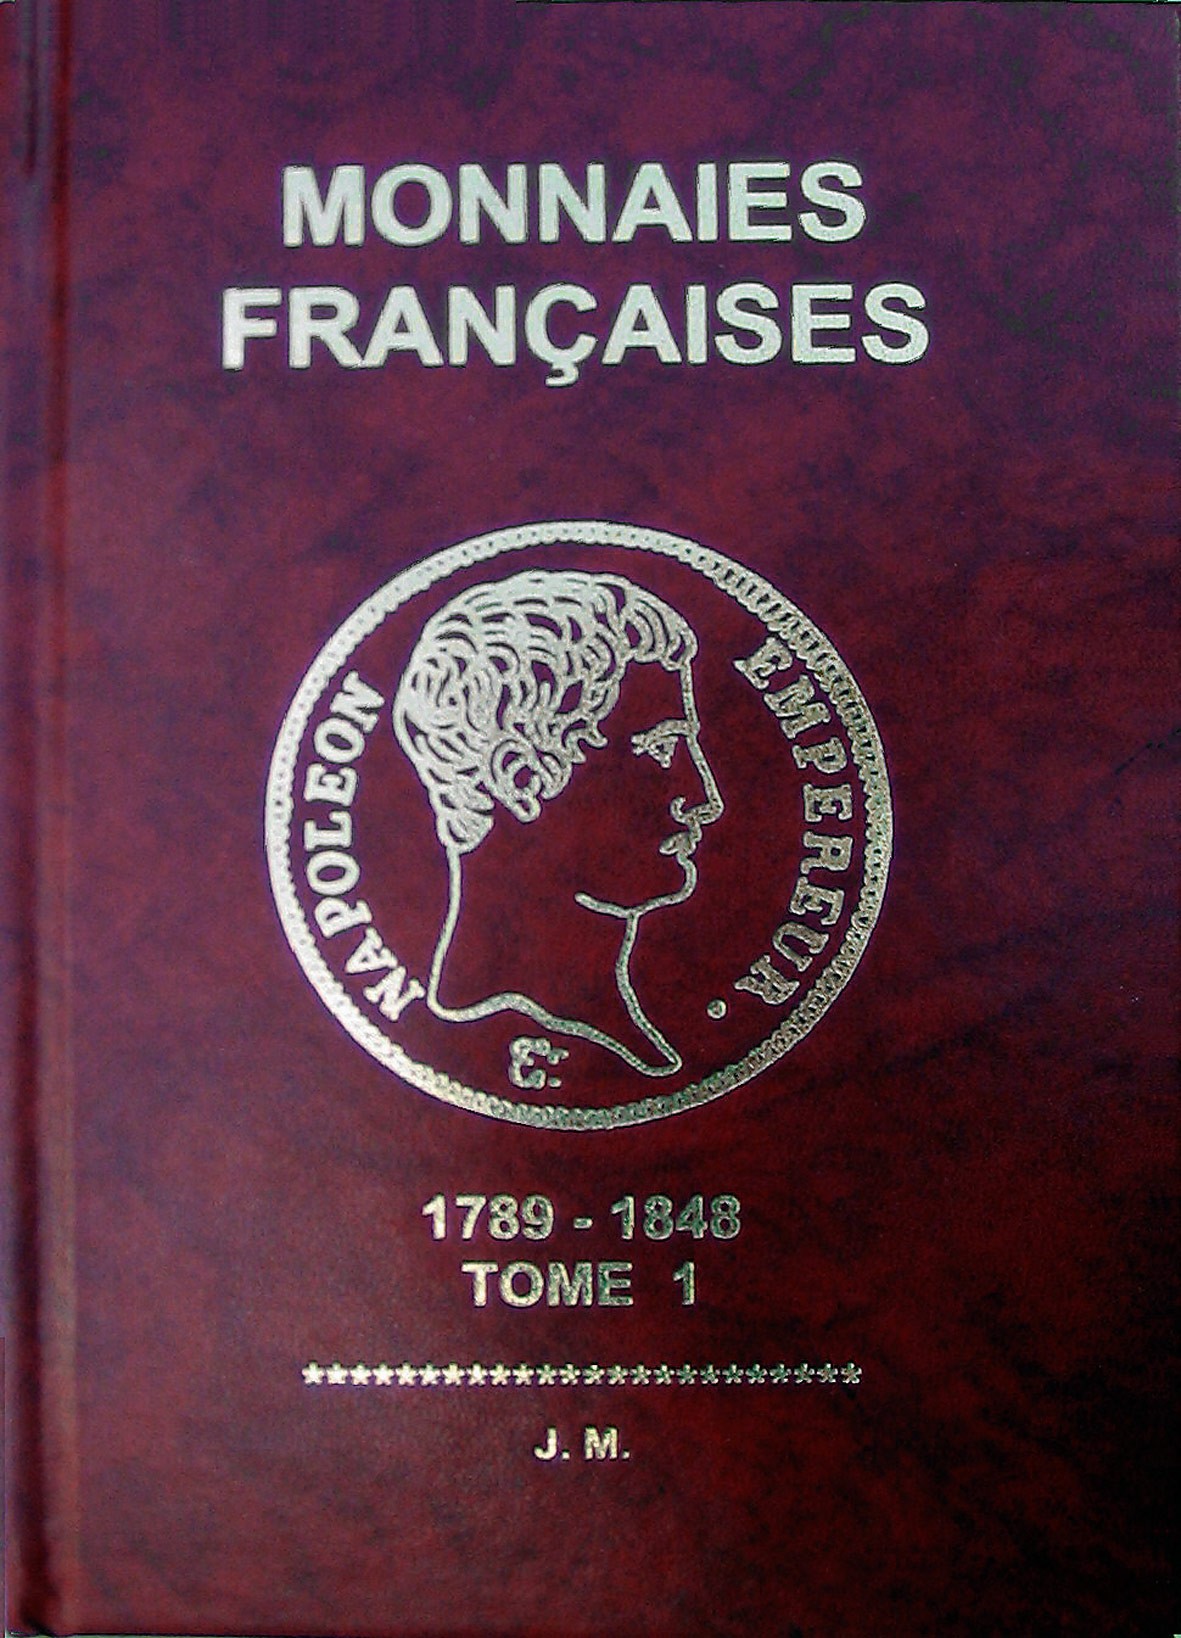 Monnaies françaises 1789 - 1848 Tome 1